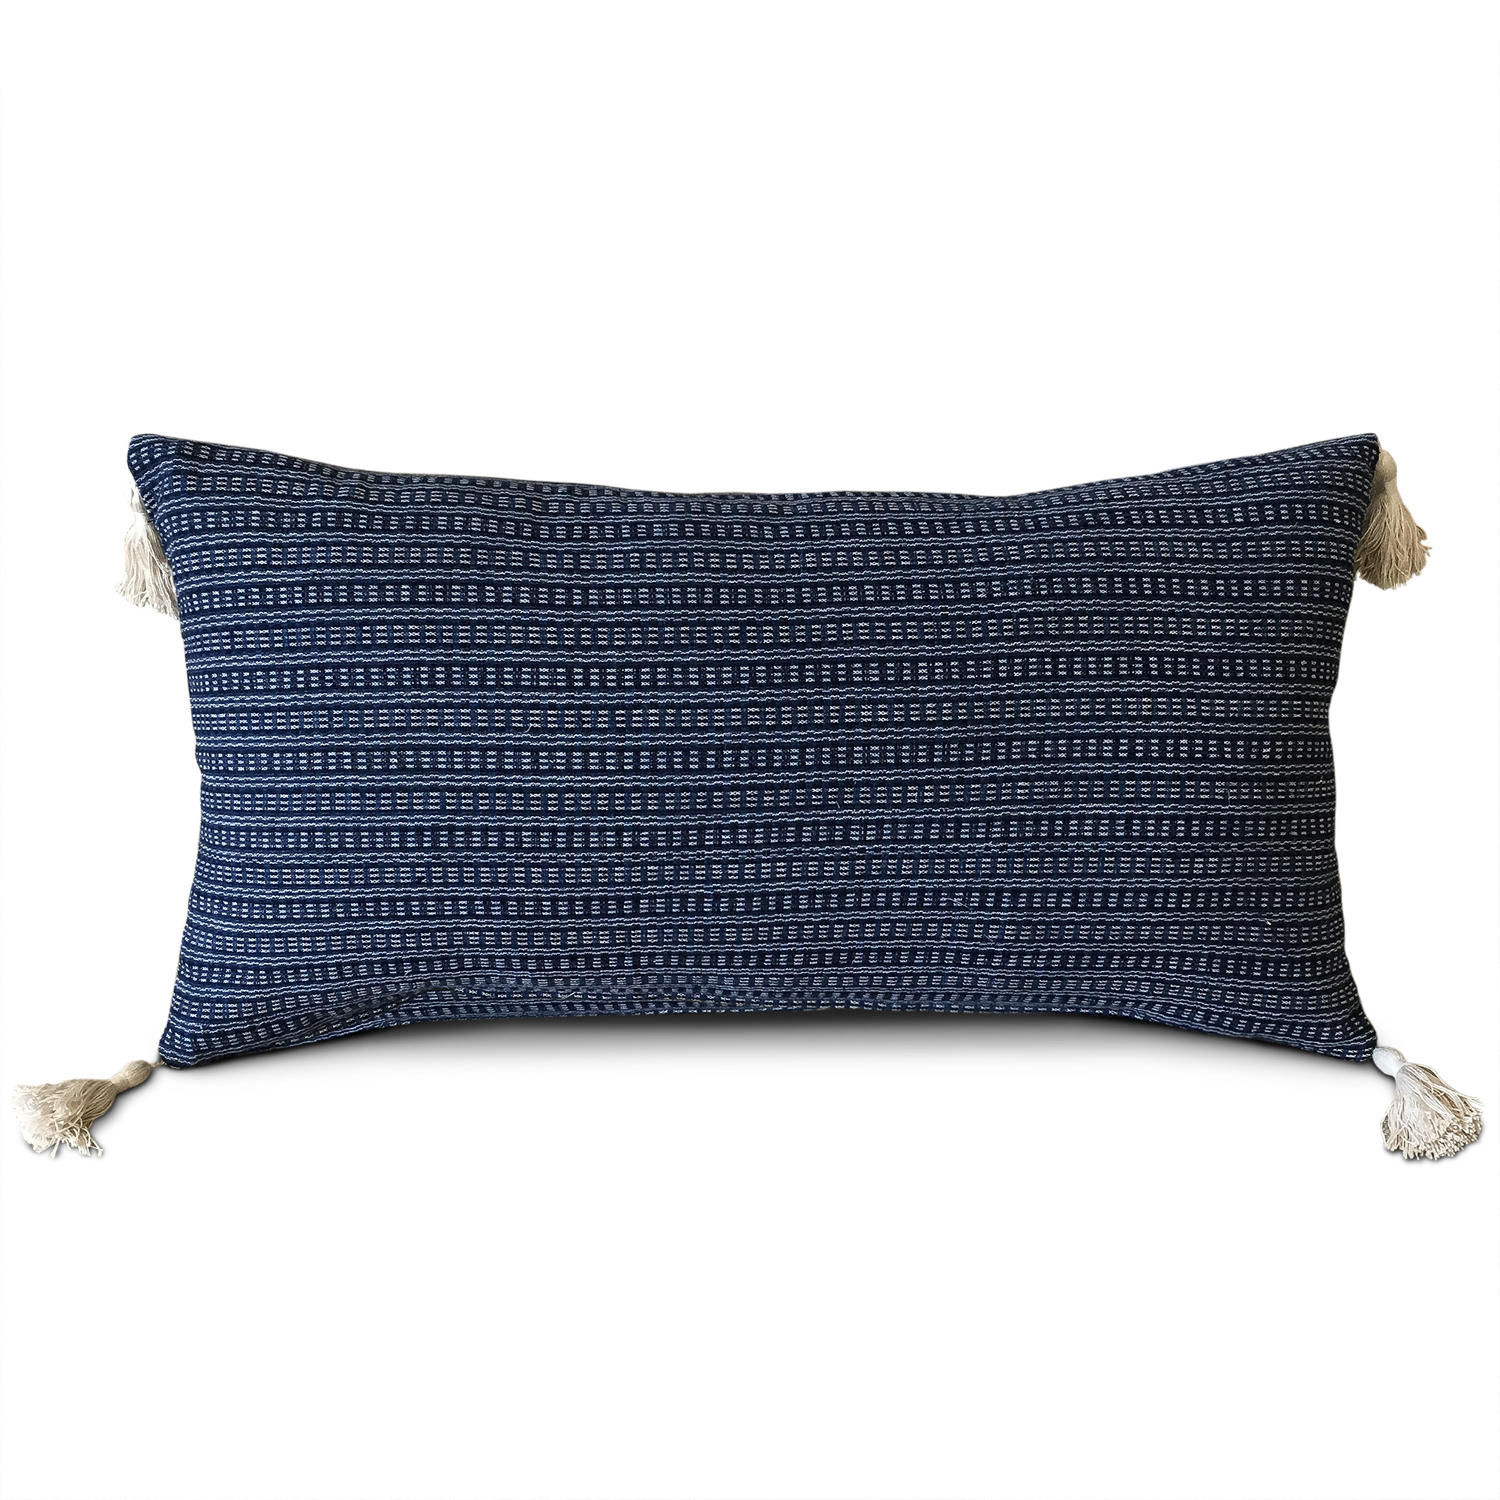 Shui Homespun Cushions with Tassels